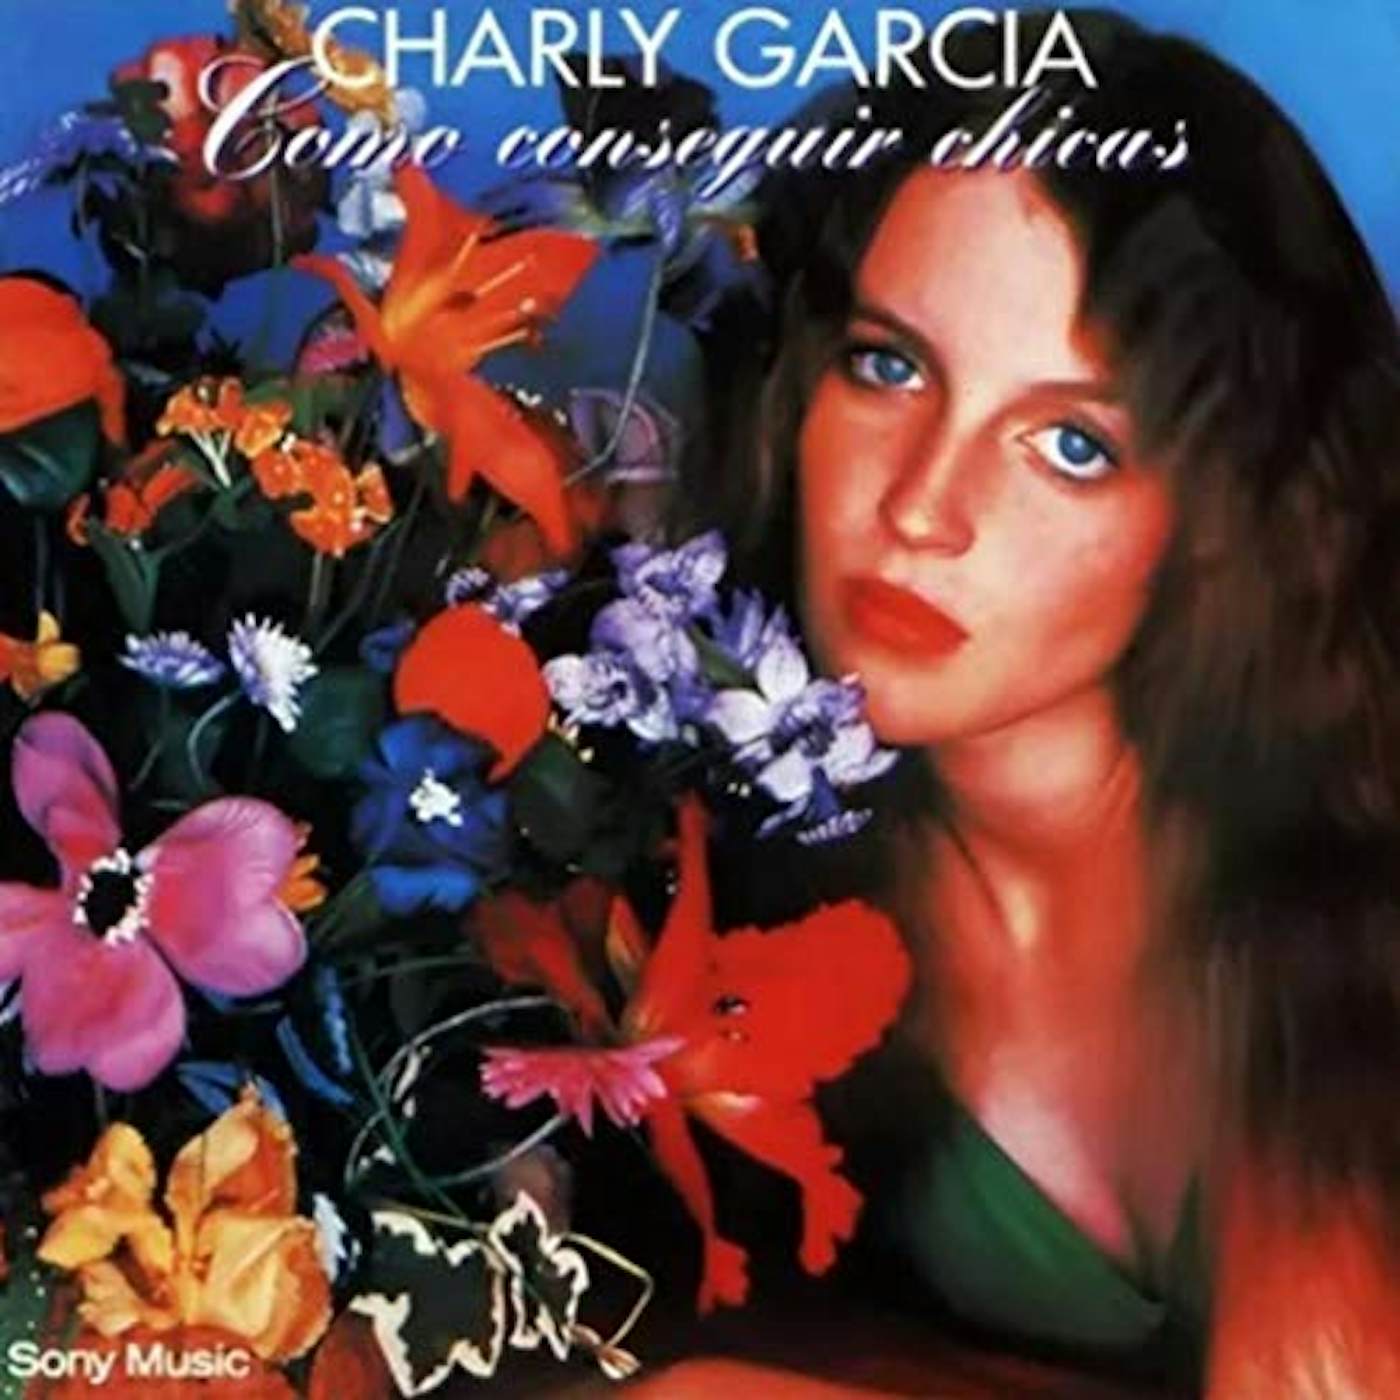 Charly Garcia Pena Como Conseguir Chicas Vinyl Record